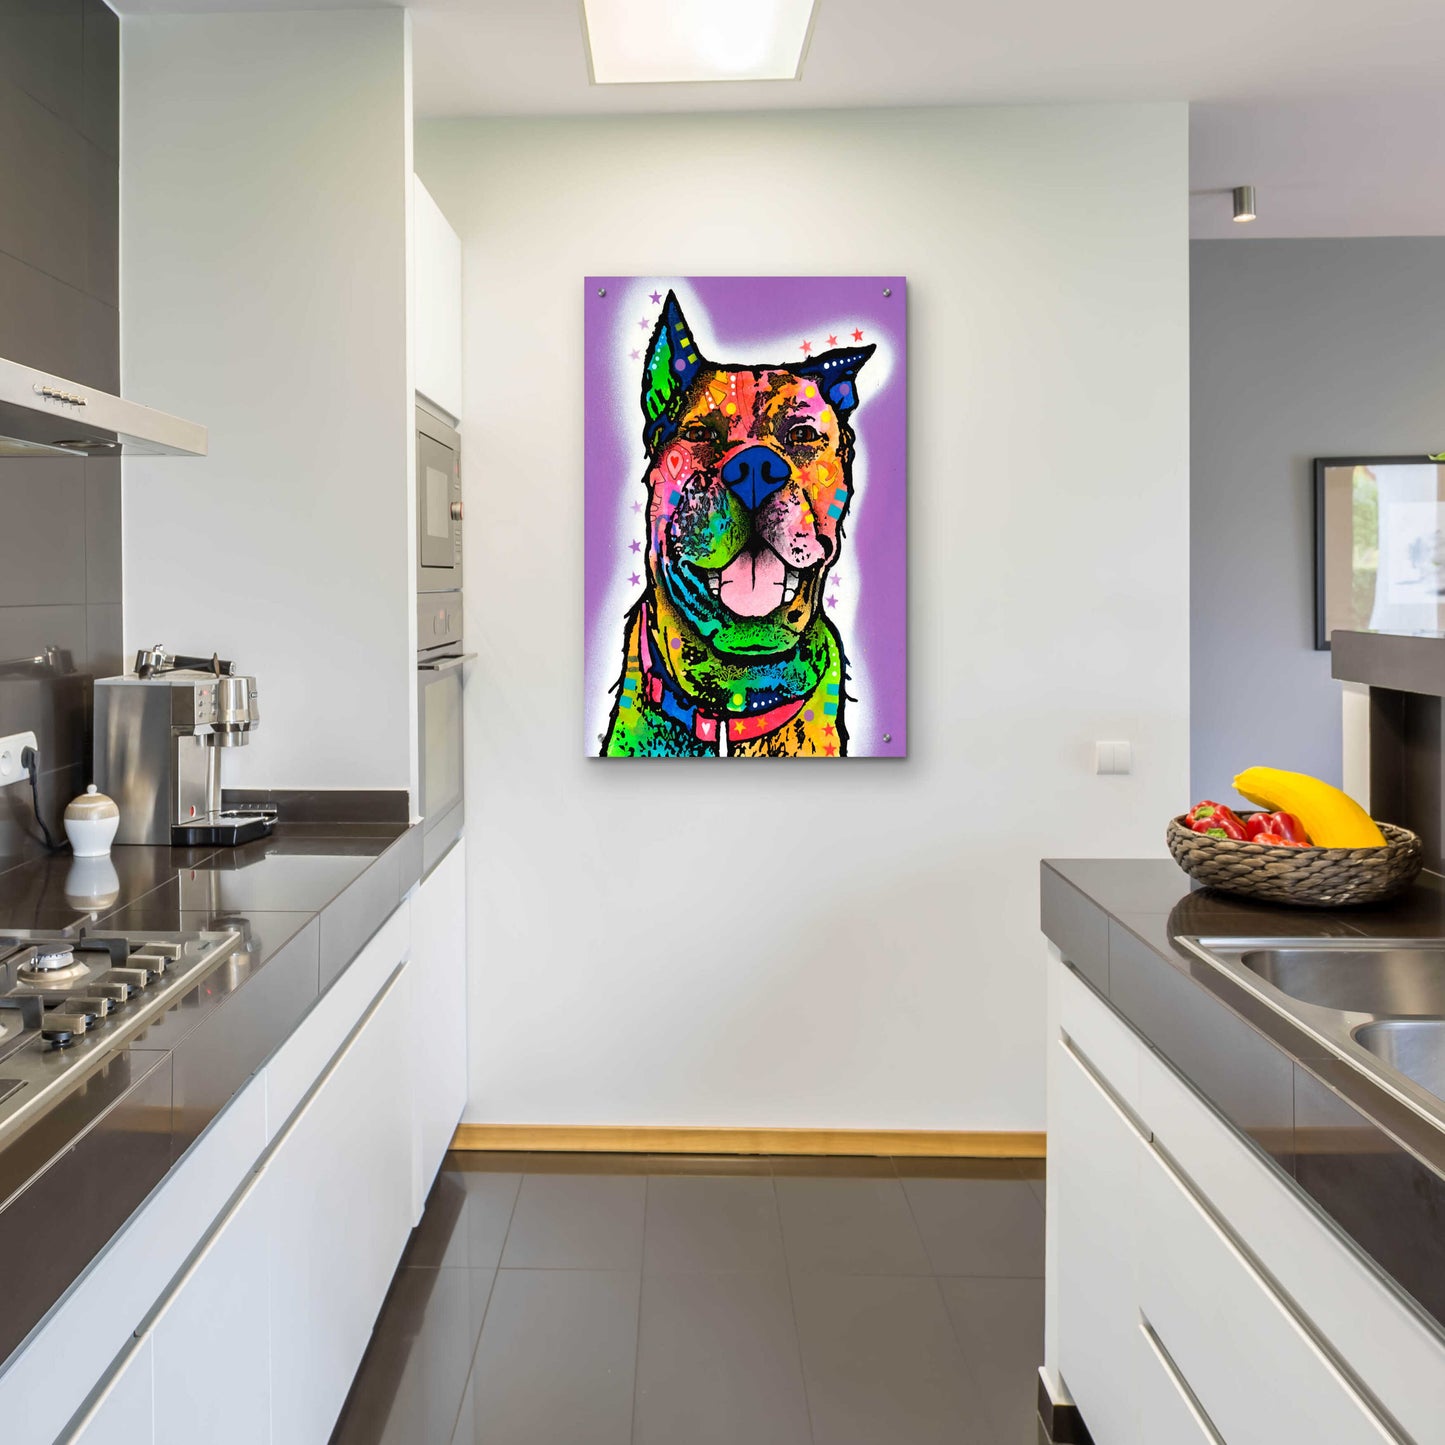 Epic Art 'Kona' by Dean Russo, Acrylic Glass Wall Art,24x36